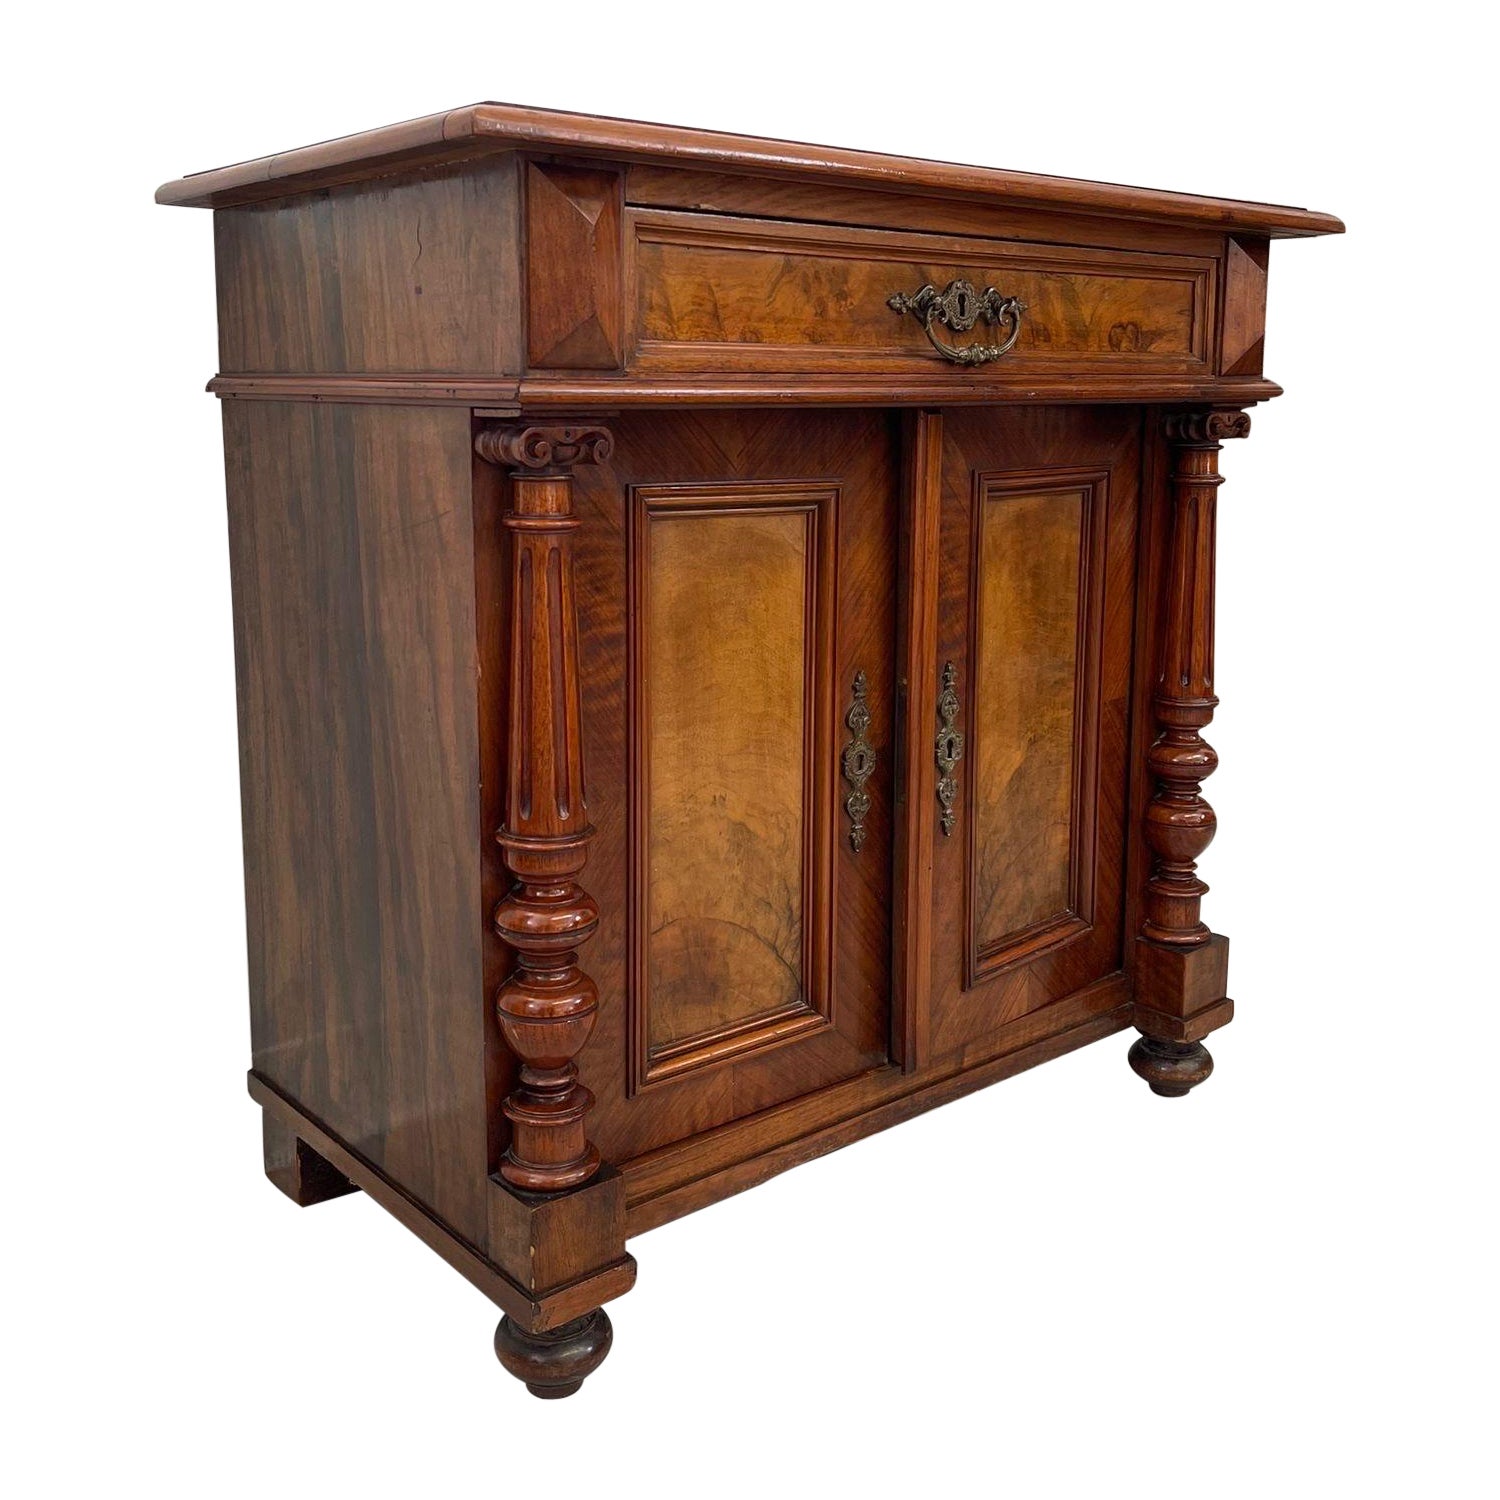 Table d'appoint vintage en bois avec panneaux avant ornés de broussin et détails en bois sculpté